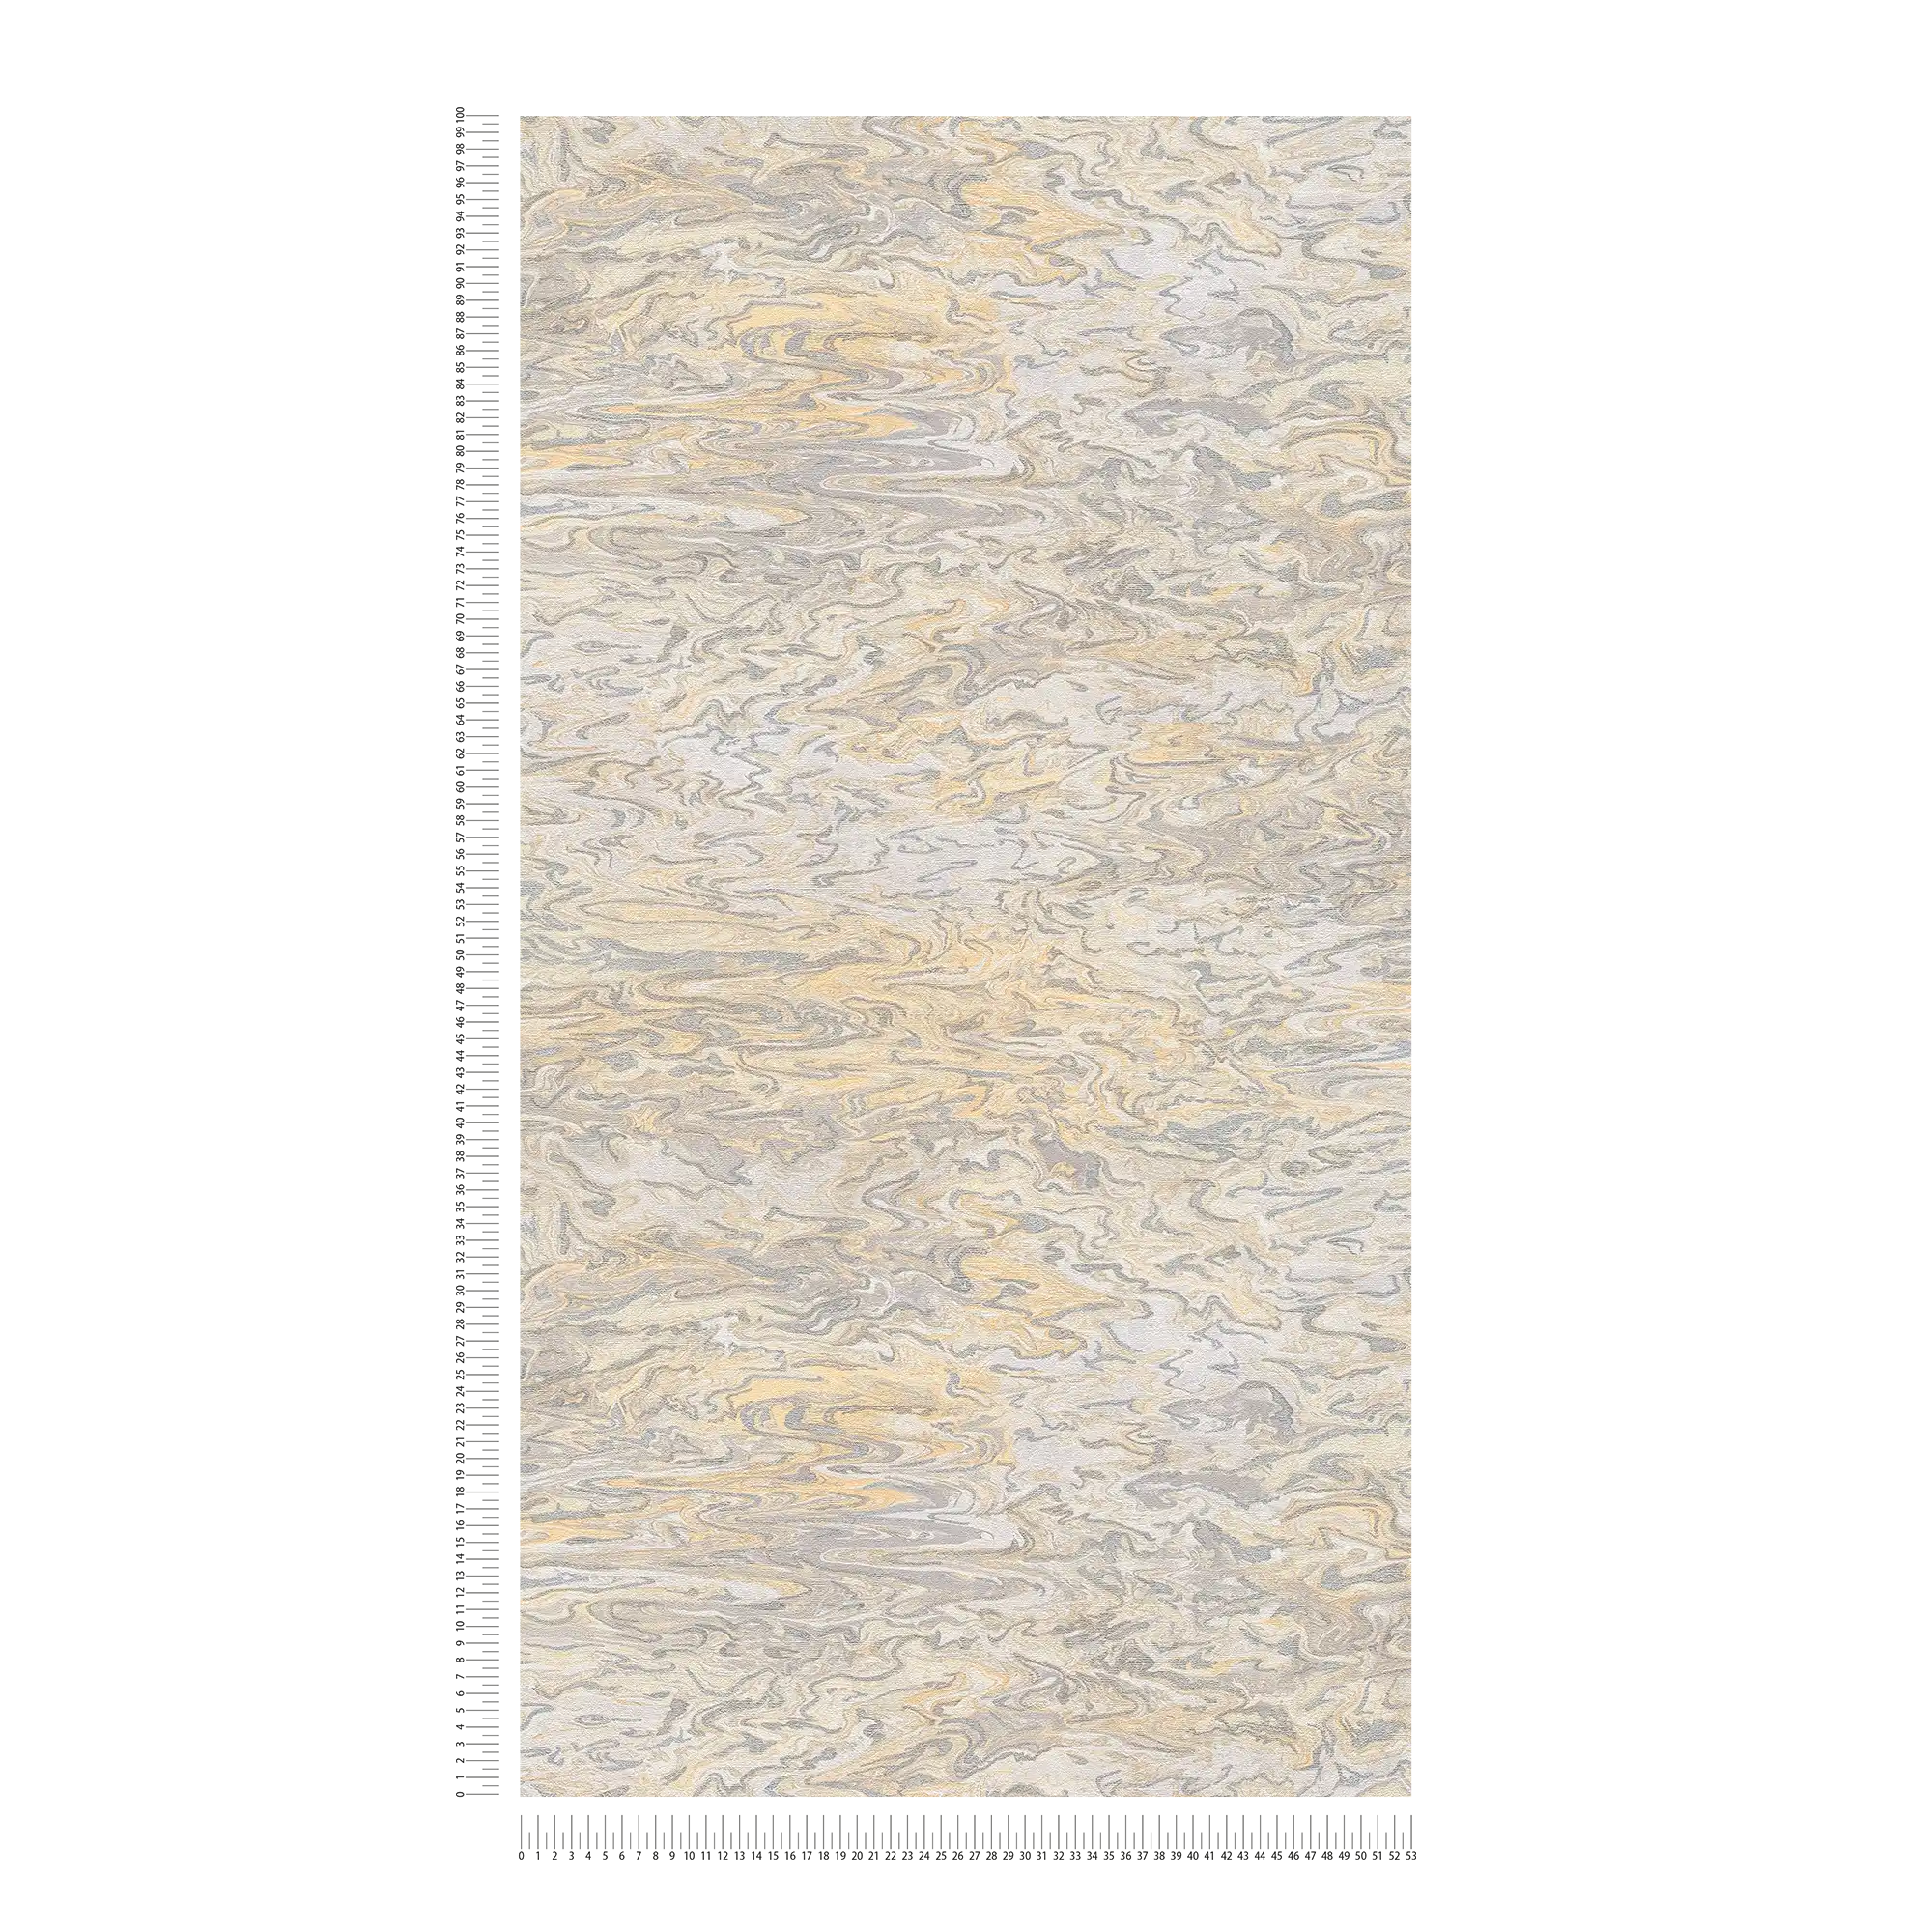             Papel pintado jaspeado diseño abstracto - beige, gris, crema
        